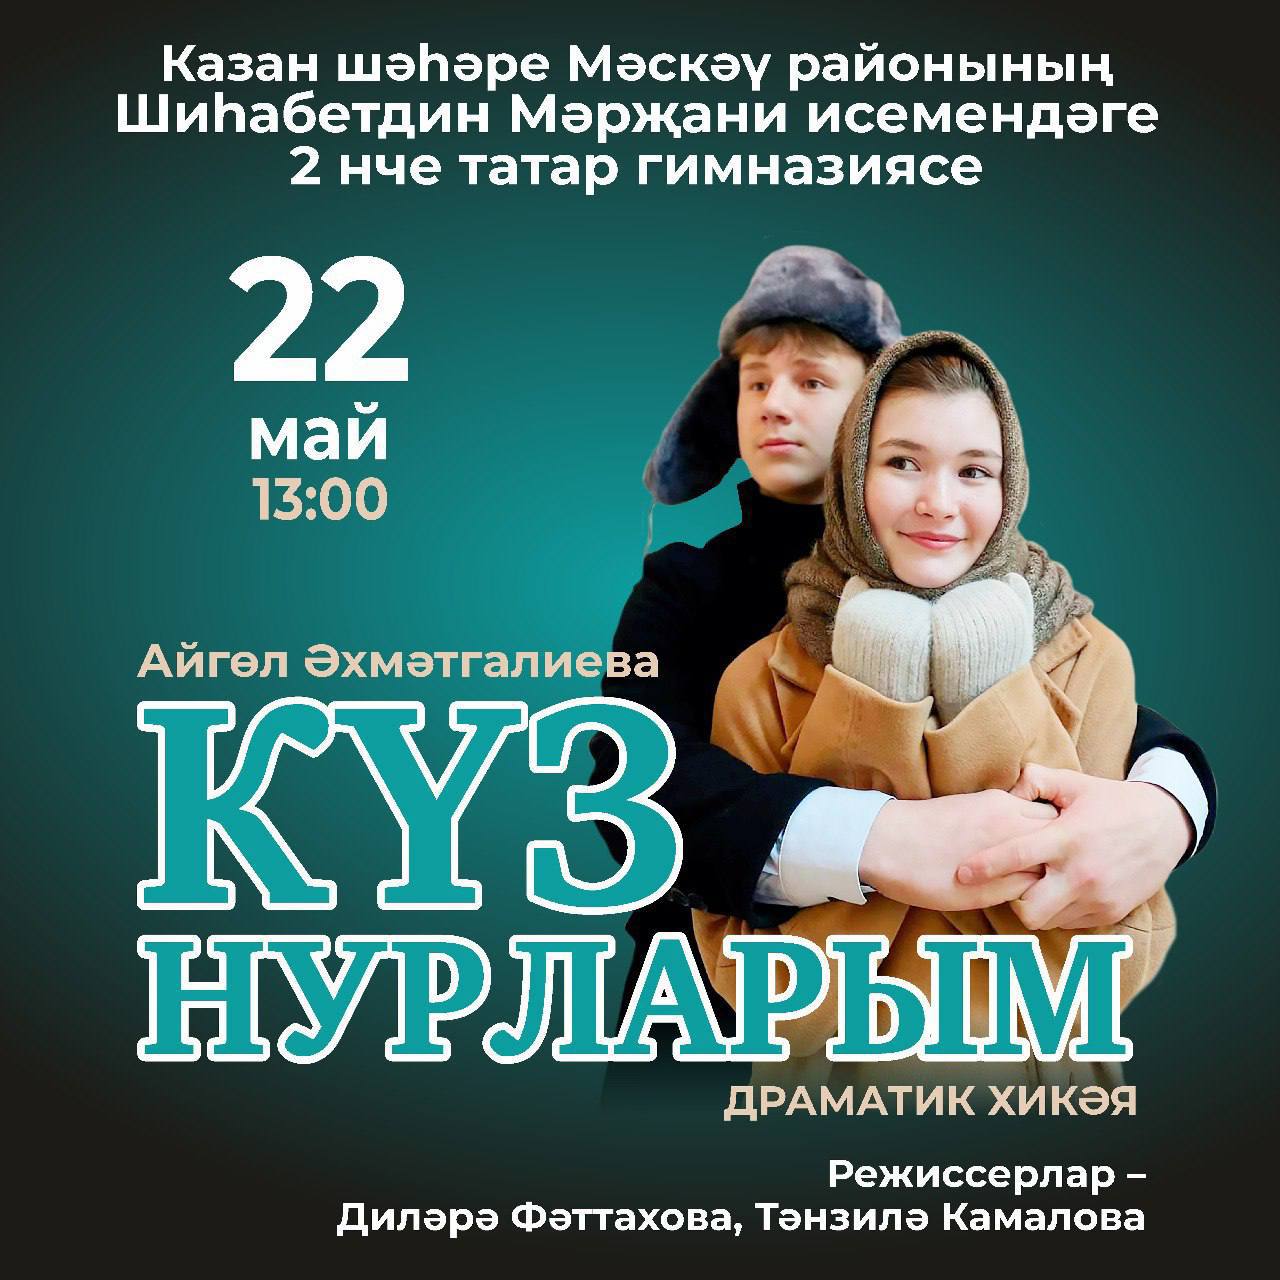 Татарская гимназия №2 поставит спектакль «Күз нурларым»